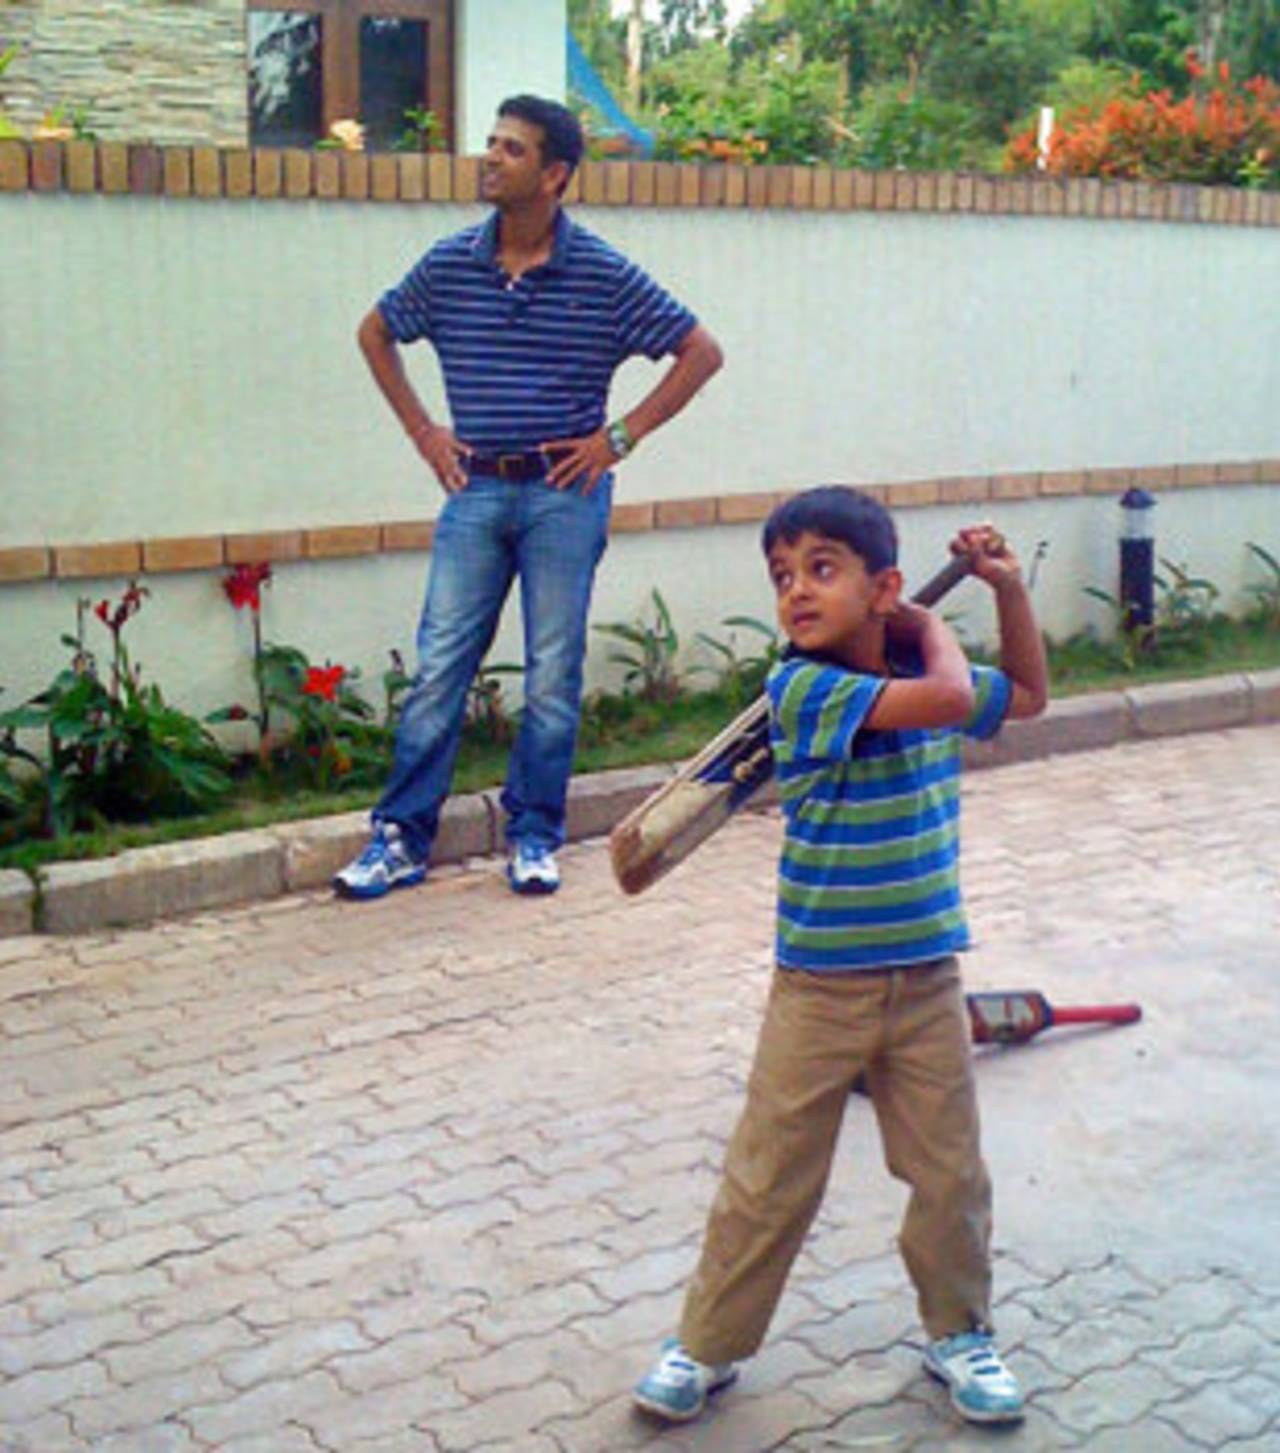 Dravid watches his son Samit play outside their home in Bangalore&nbsp;&nbsp;&bull;&nbsp;&nbsp;ESPNcricinfo Ltd